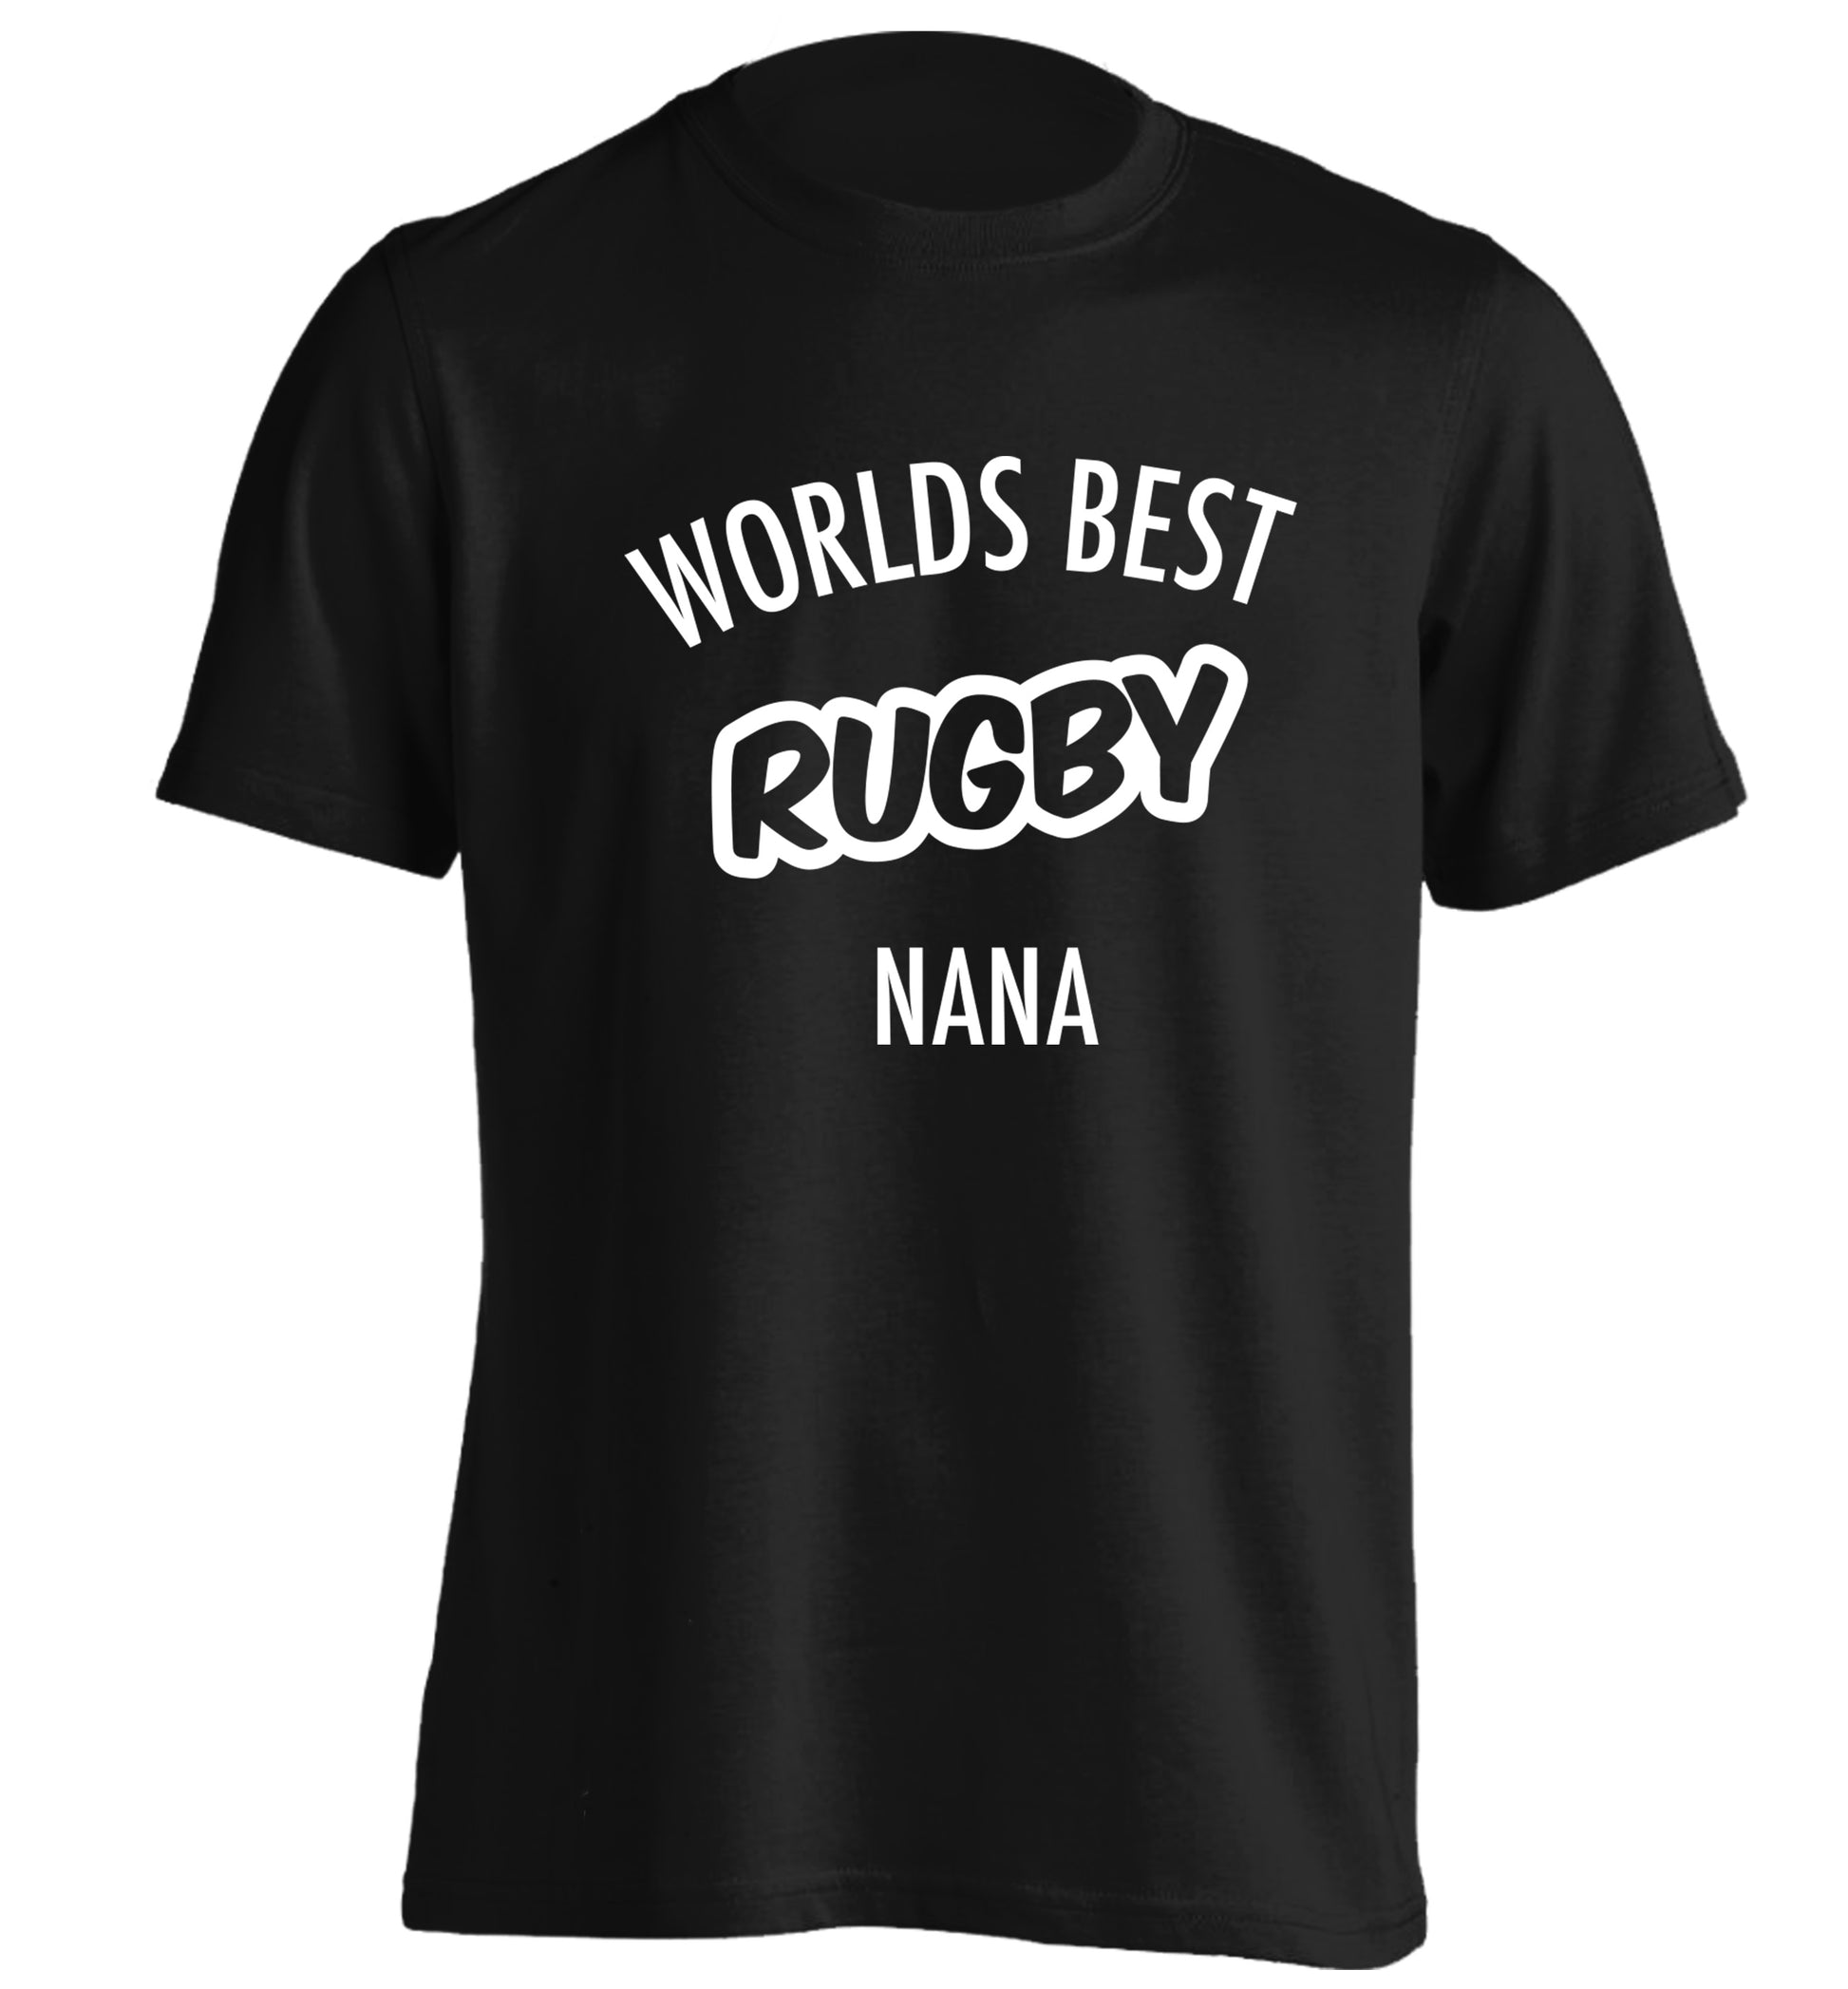 Worlds Best Rugby Grandma adults unisex black Tshirt 2XL